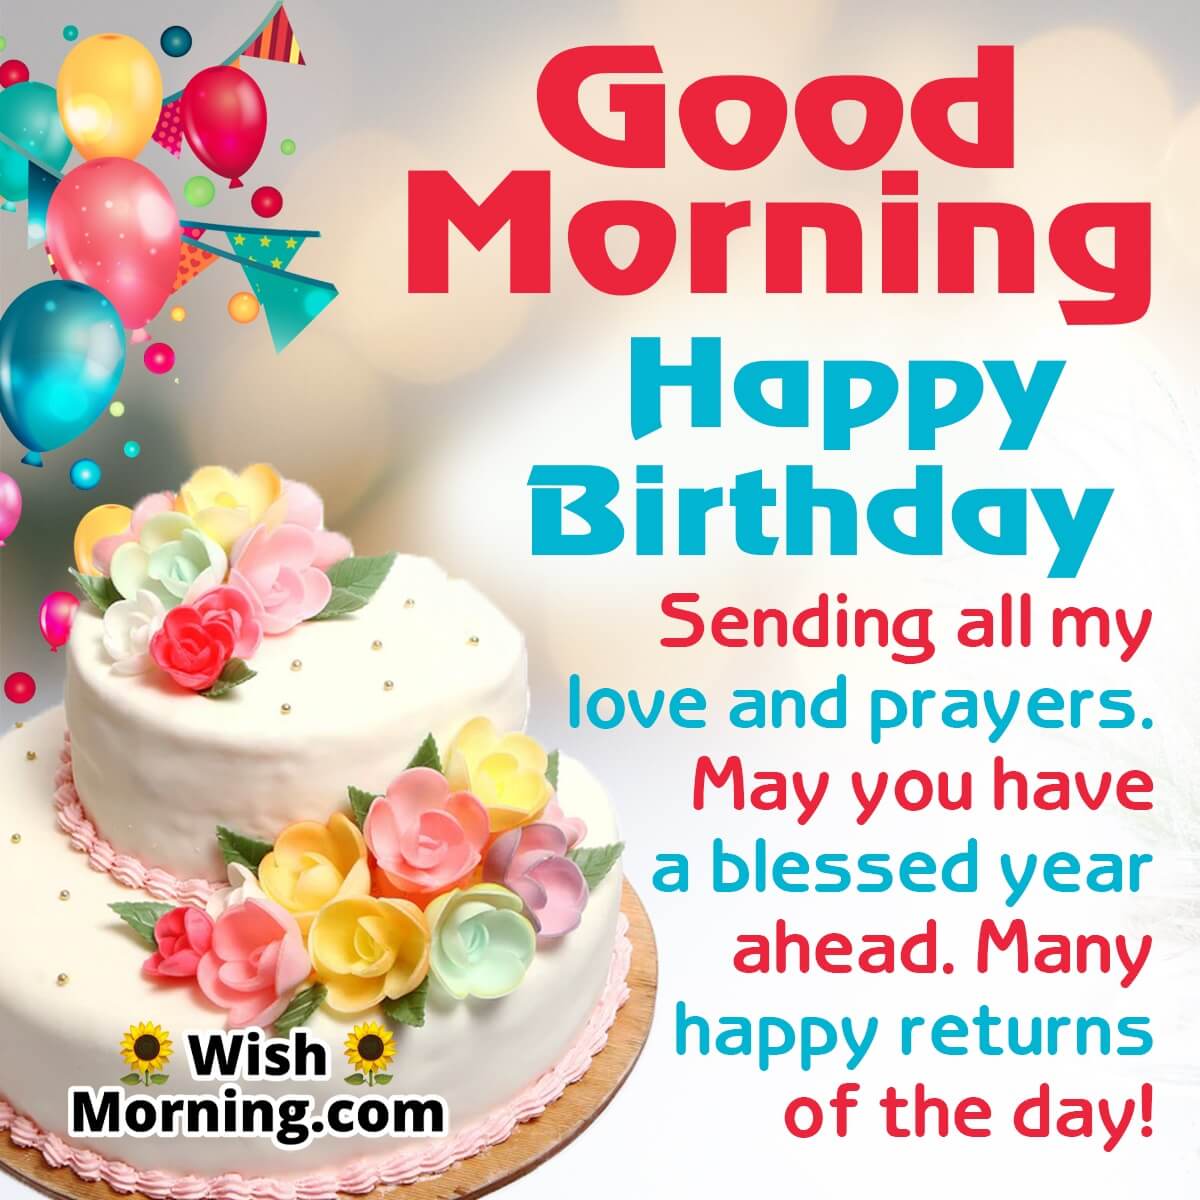 Good Morning Birthday Wishes - Wish Morning